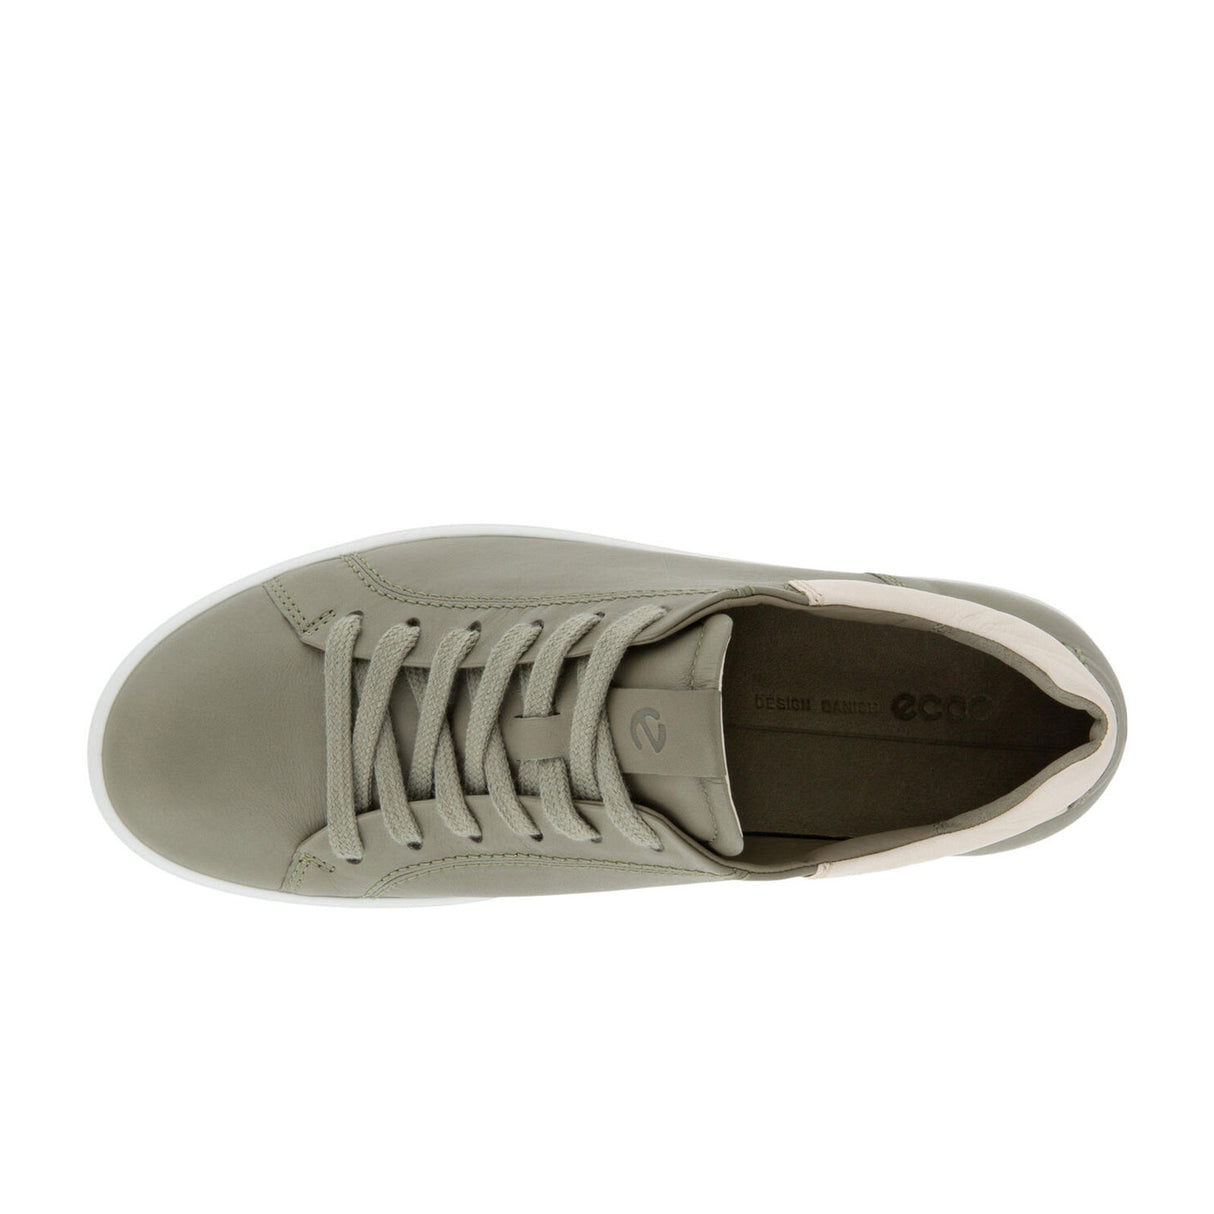 ECCO Soft 7 Street Sneaker (Women) - Vetiver/Limestone Dress-Casual - Lace Ups - The Heel Shoe Fitters